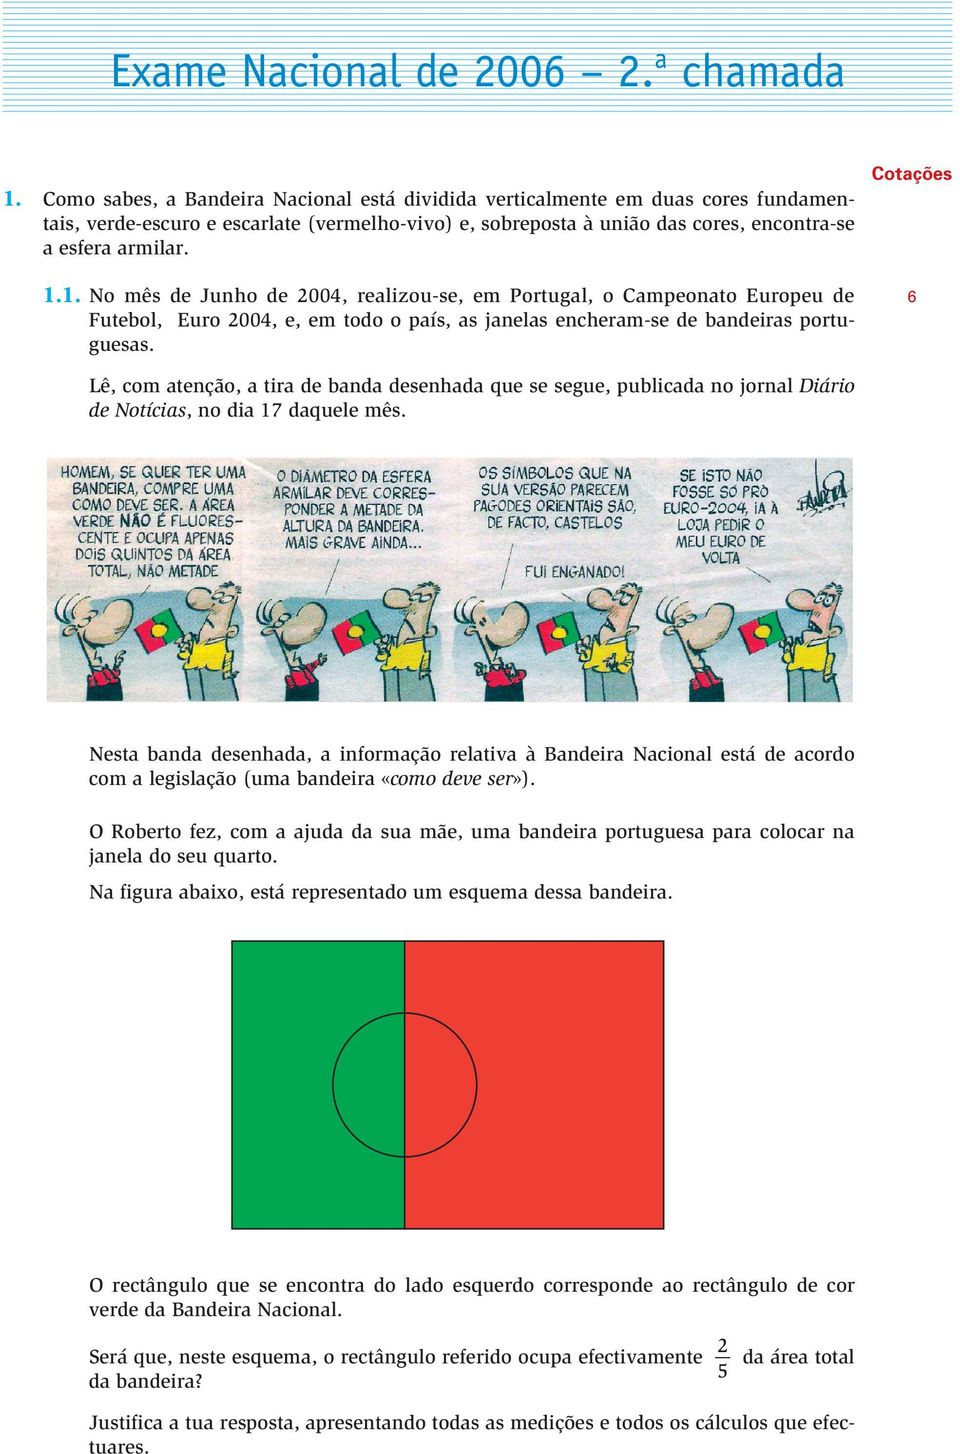 1. No mês de Junho de 00, realizou-se, em Portugal, o Campeonato Europeu de Futebol, Euro 00, e, em todo o país, as janelas encheram-se de bandeiras portuguesas.